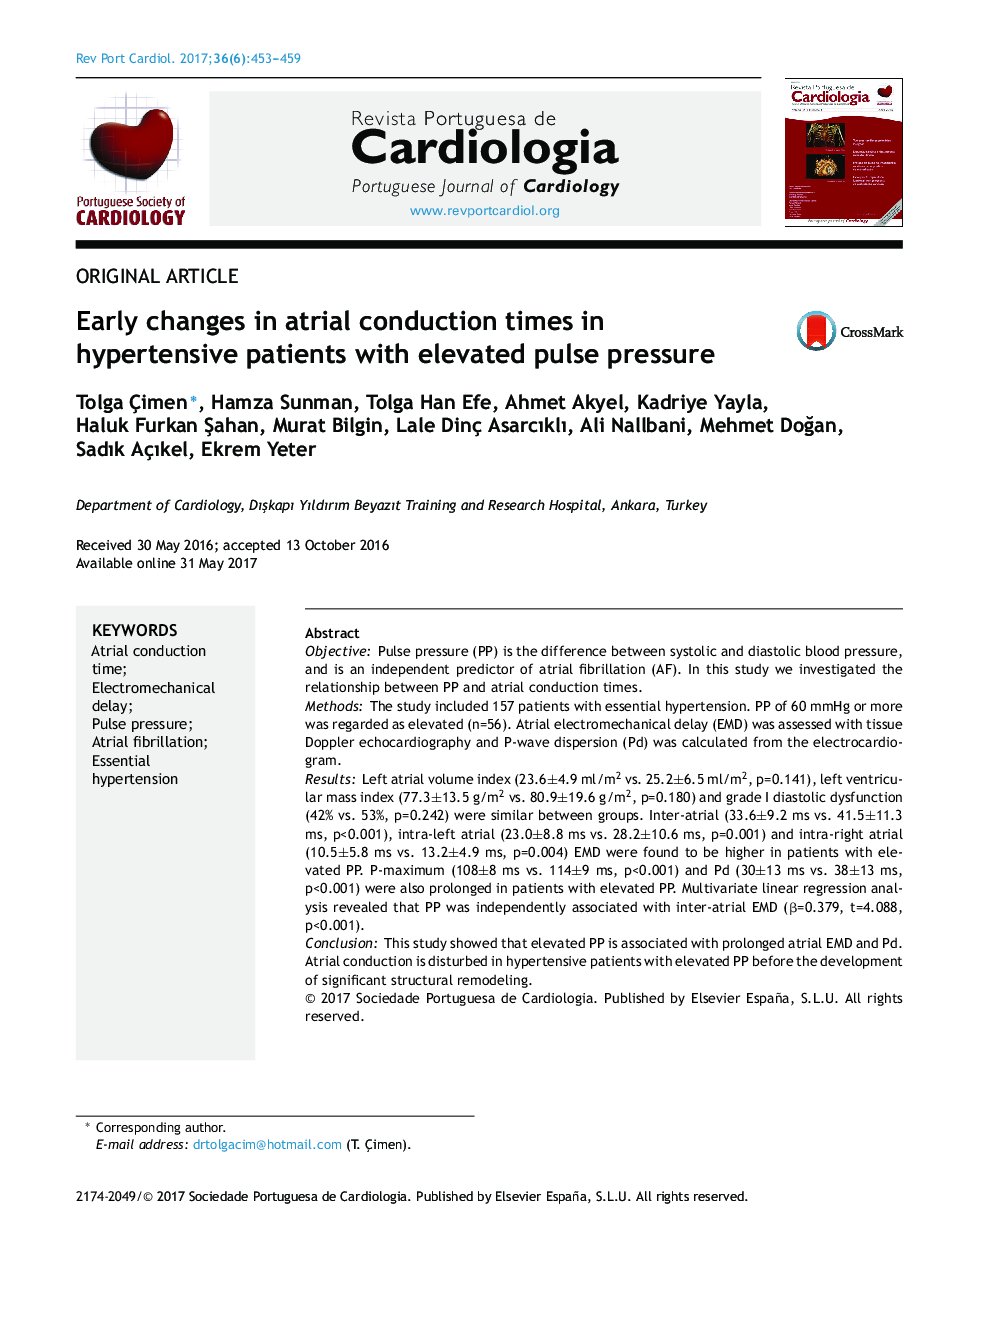 تغییرات اولیه در زمان هدایت دهلیزی در بیماران مبتلا به فشار خون بالا با فشار بالا پالس 